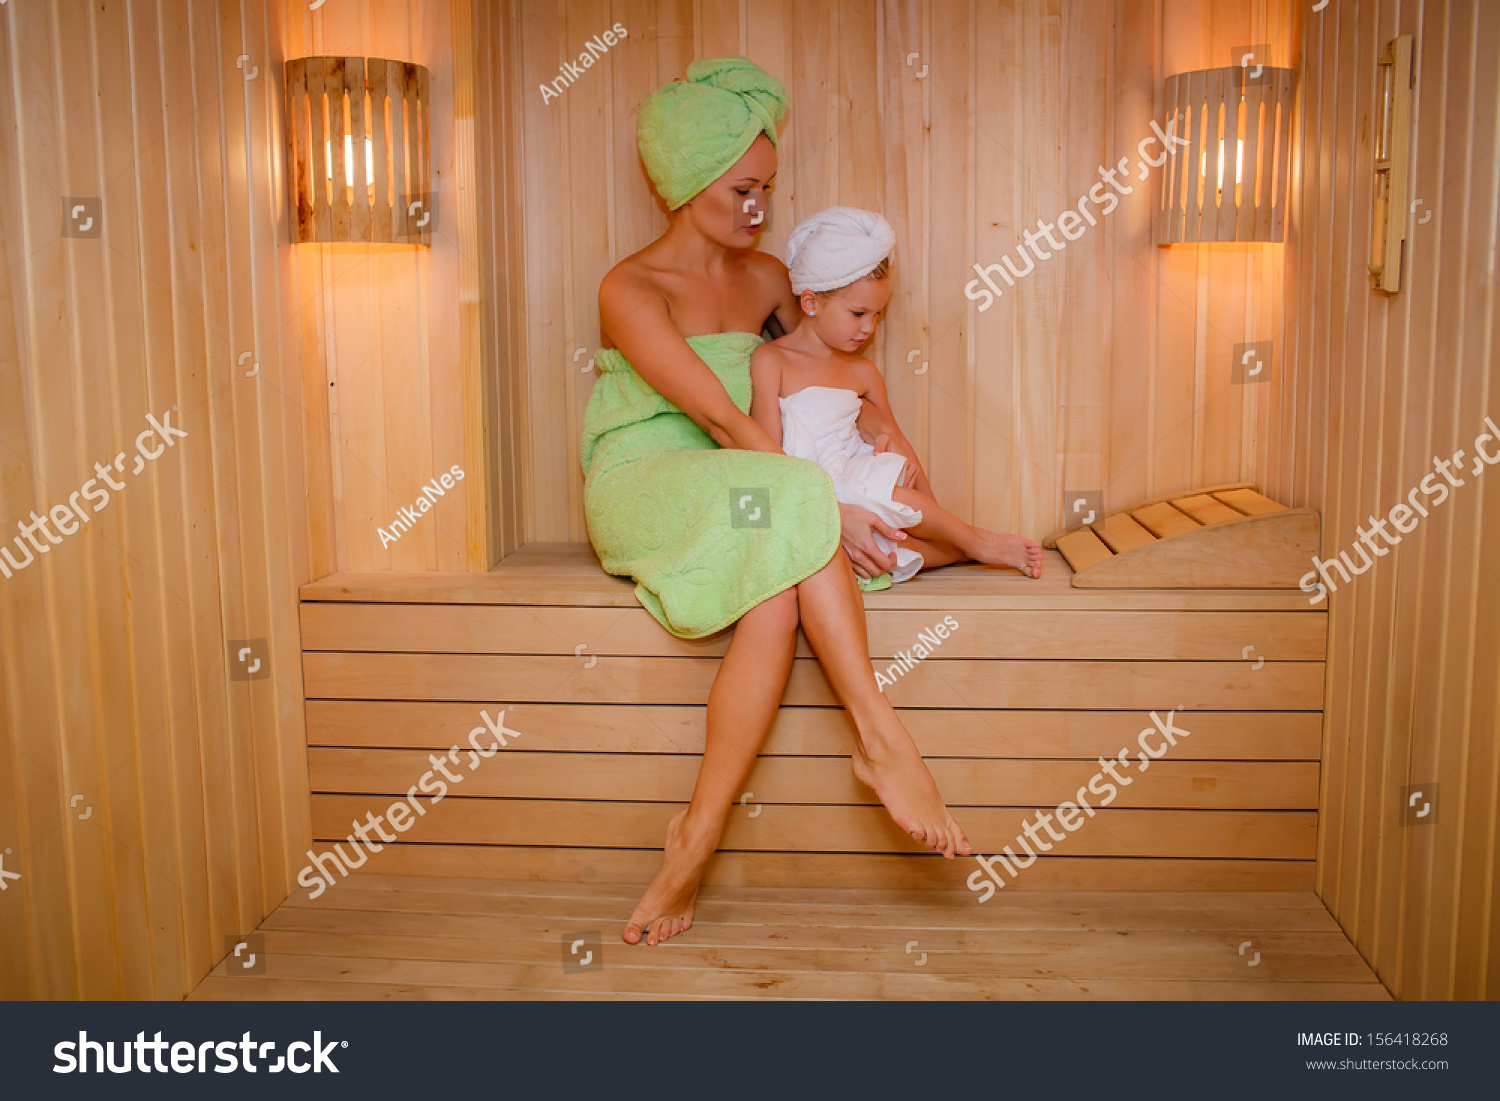 мамочки в бане фото